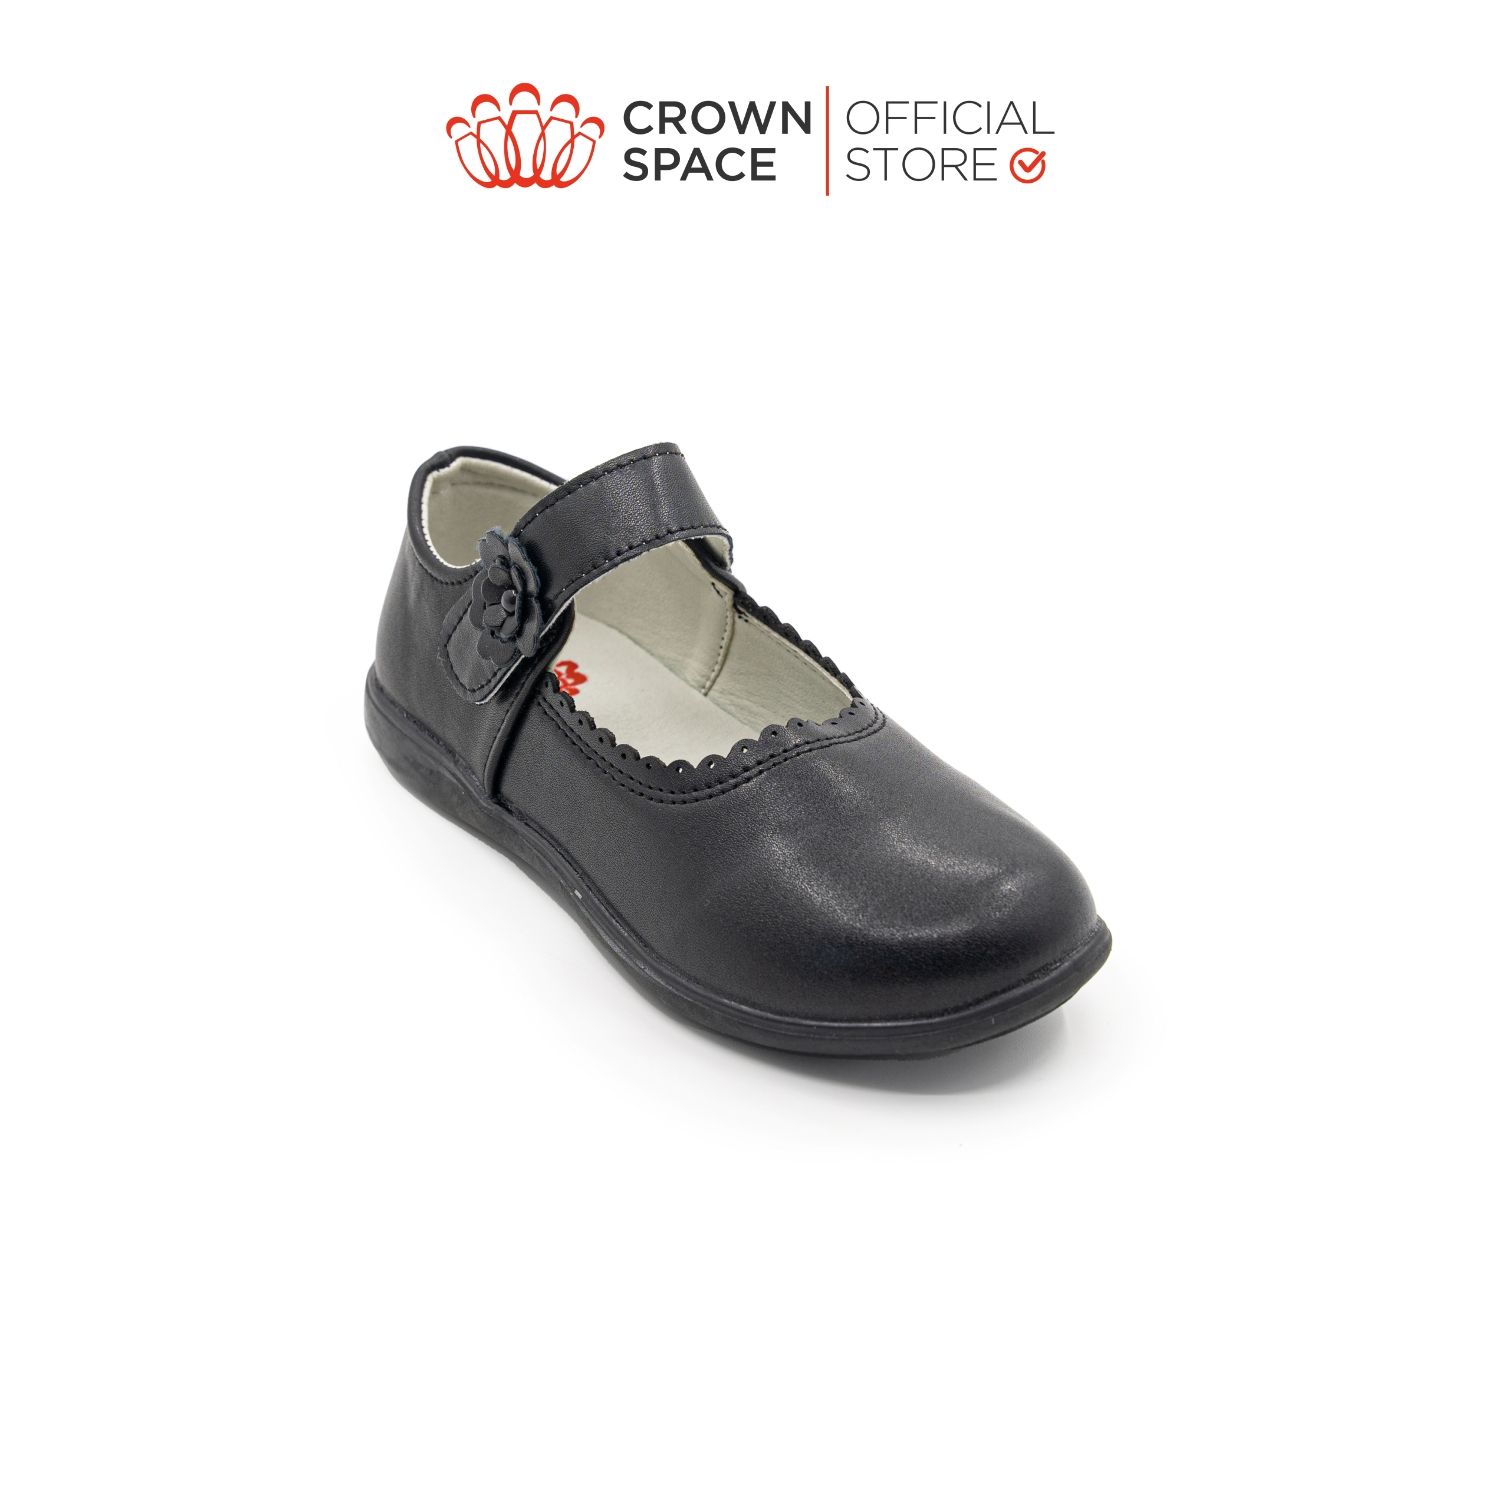  Giày Búp Bê School Shoes Đi Học Trẻ Em Cao Cấp Chính Hãng Crown Space Dành Cho Bé Gái CRUK3073 Size 30 - 36 